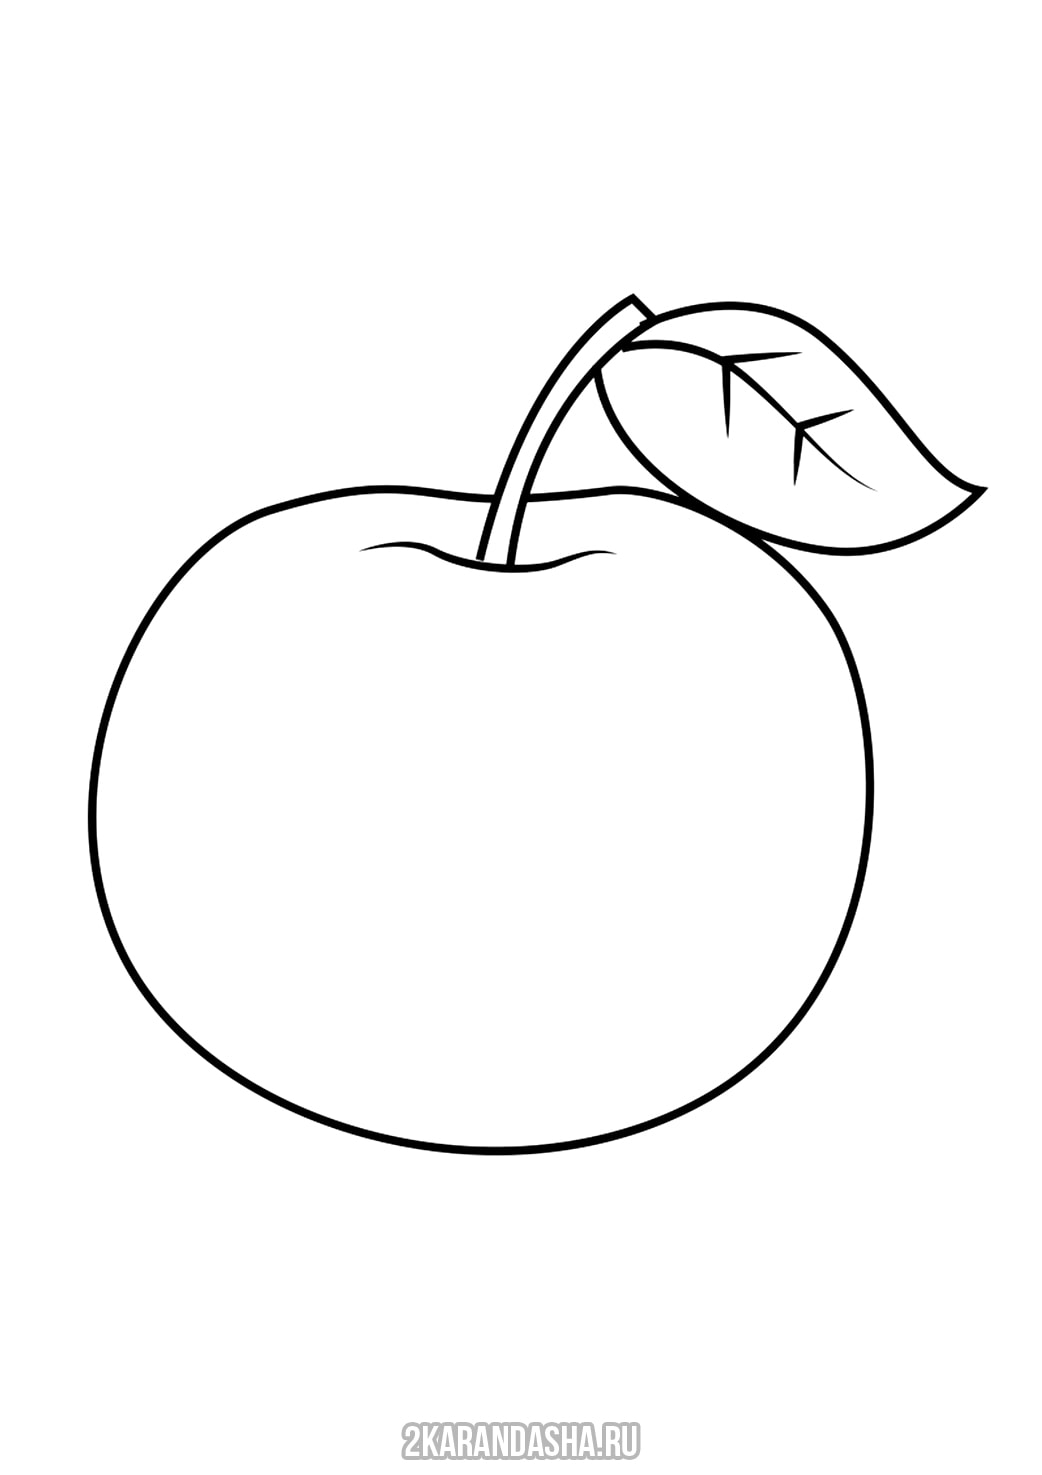 Распечатать раскраску яблоко на А4